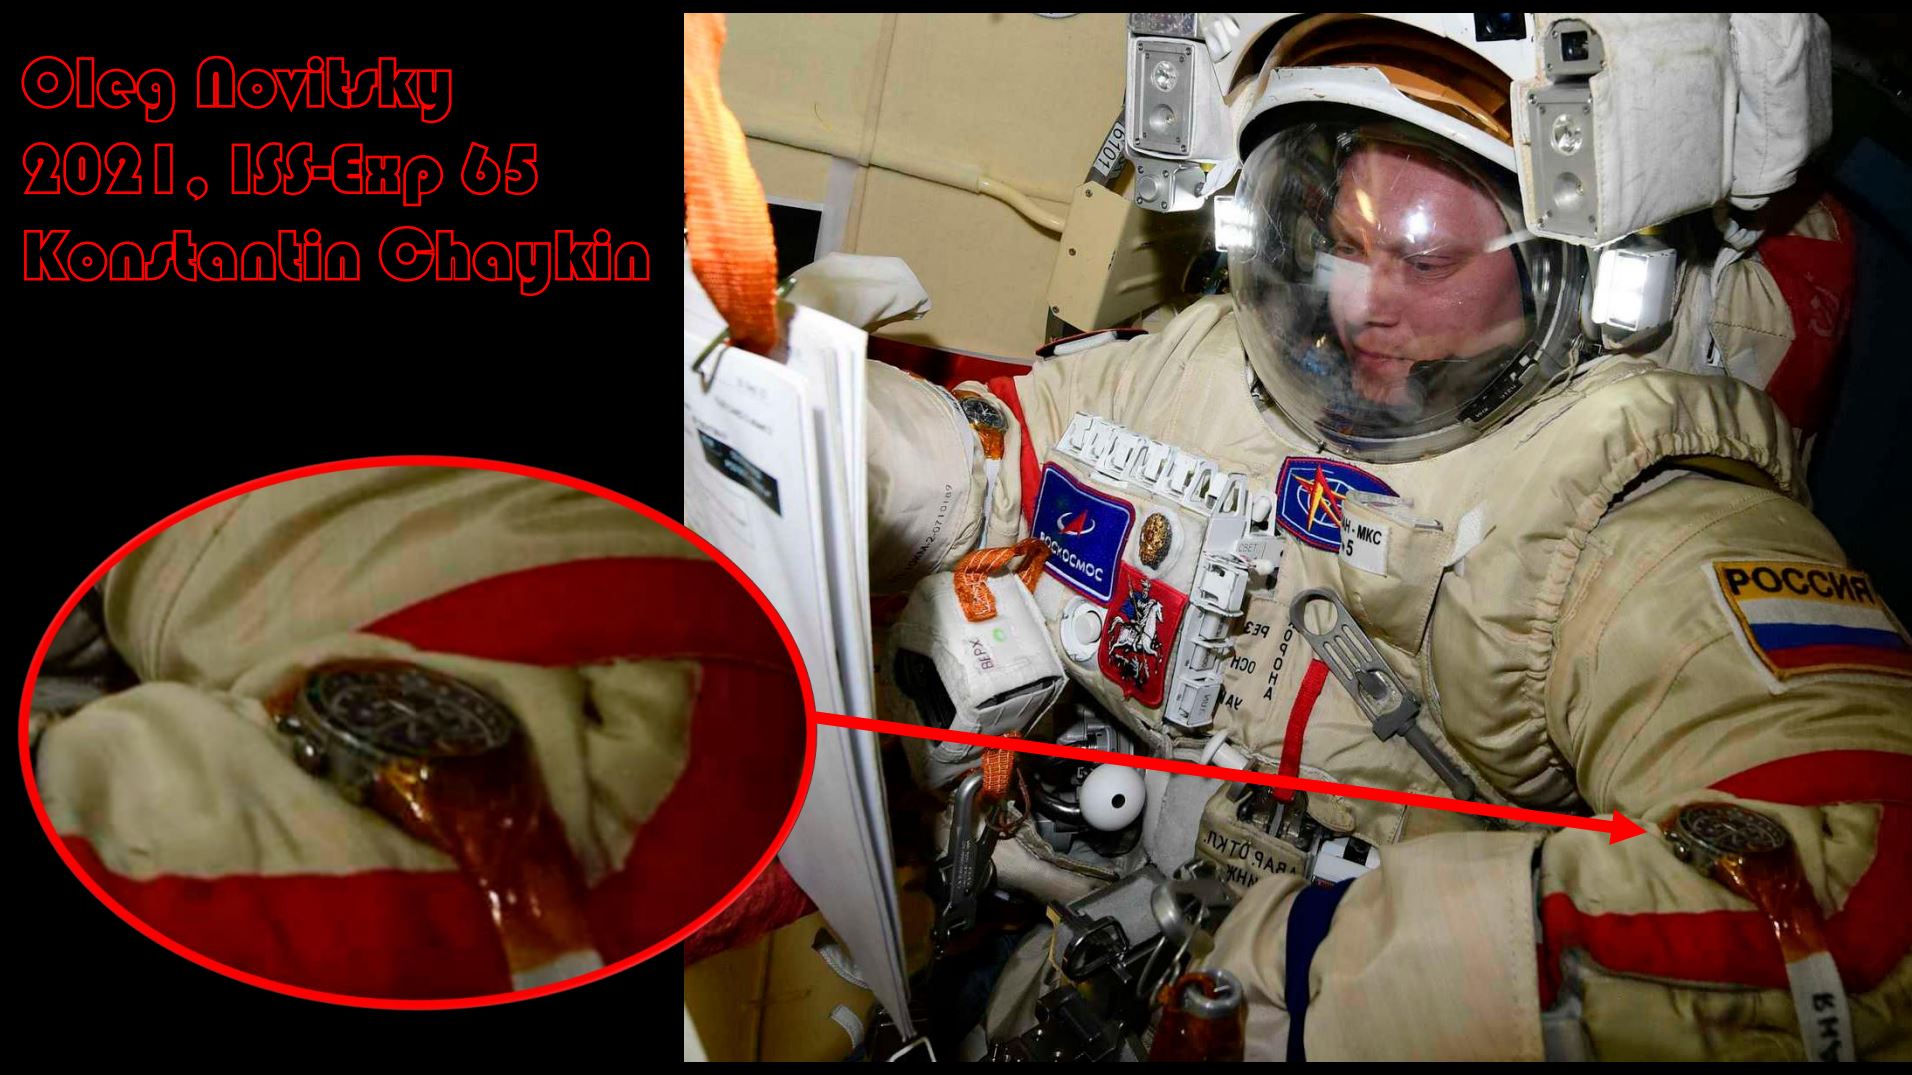 Oleg Novitsky 2021 ISS Exp 65 Konstantin Chaykin